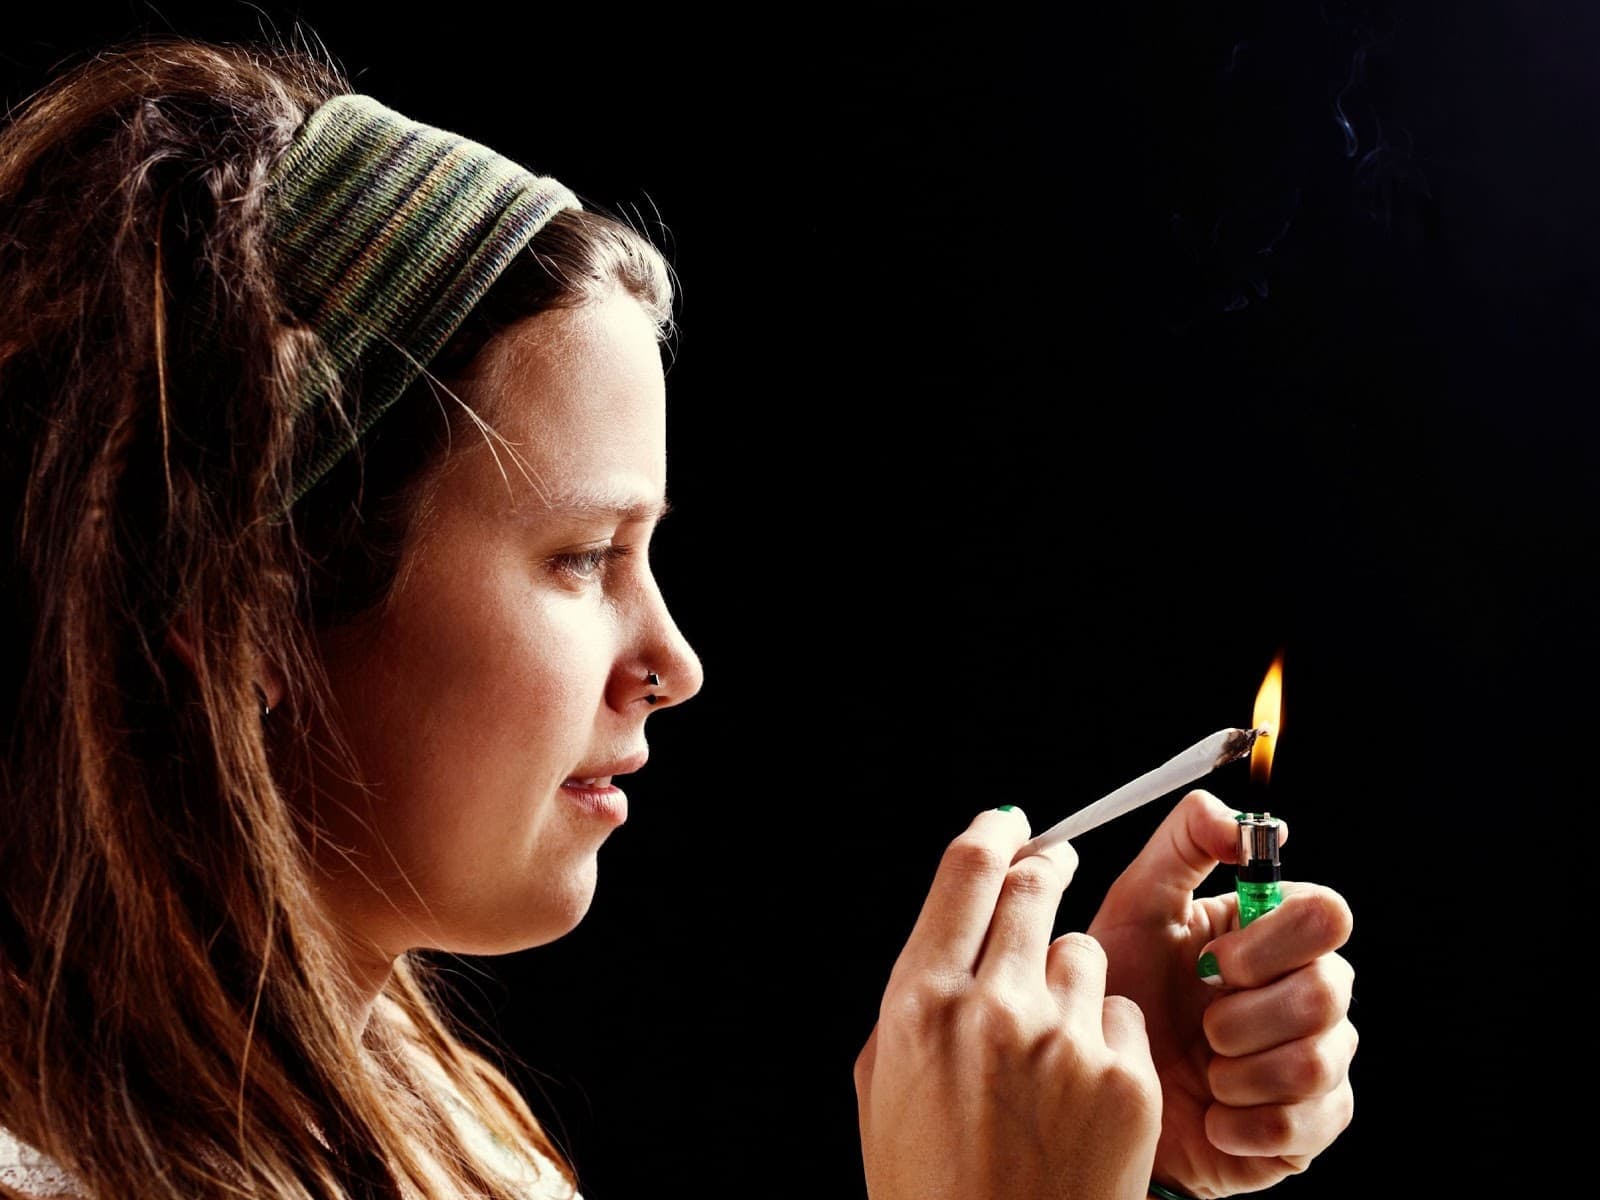 Eine Frau, die unter ihrer Abhängigkeit von Cannabis leidet, bereitet einen Joint vor, um die Entzugserscheinungen zu lindern.